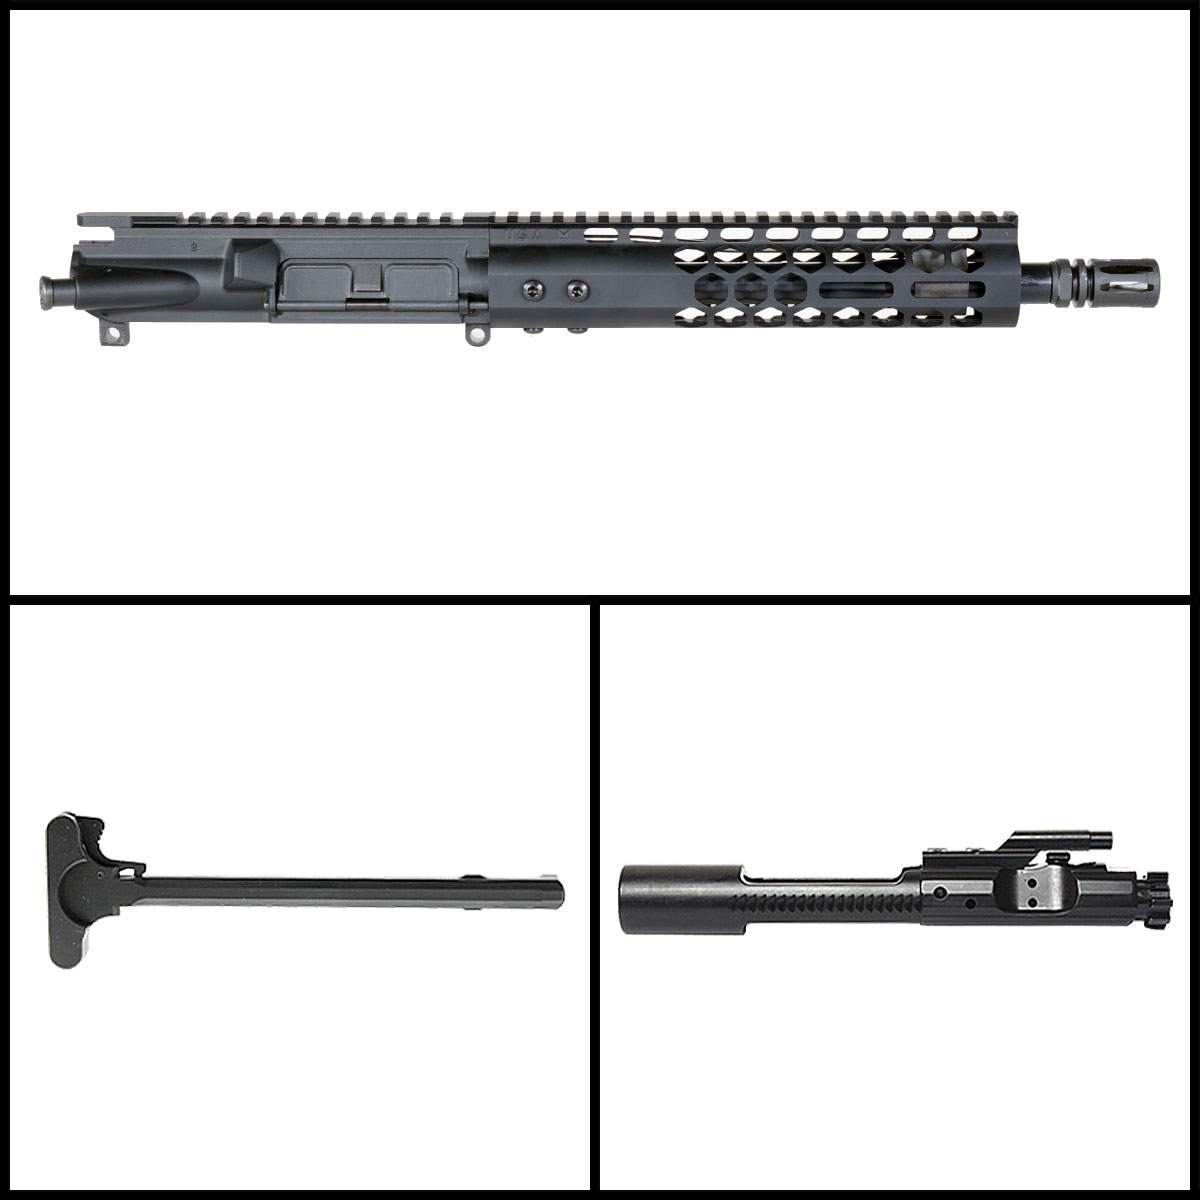 DTT 'Ikky Blikky' 10.5-inch AR-15 .223 Wylde Nitride Pistol Complete Upper Build